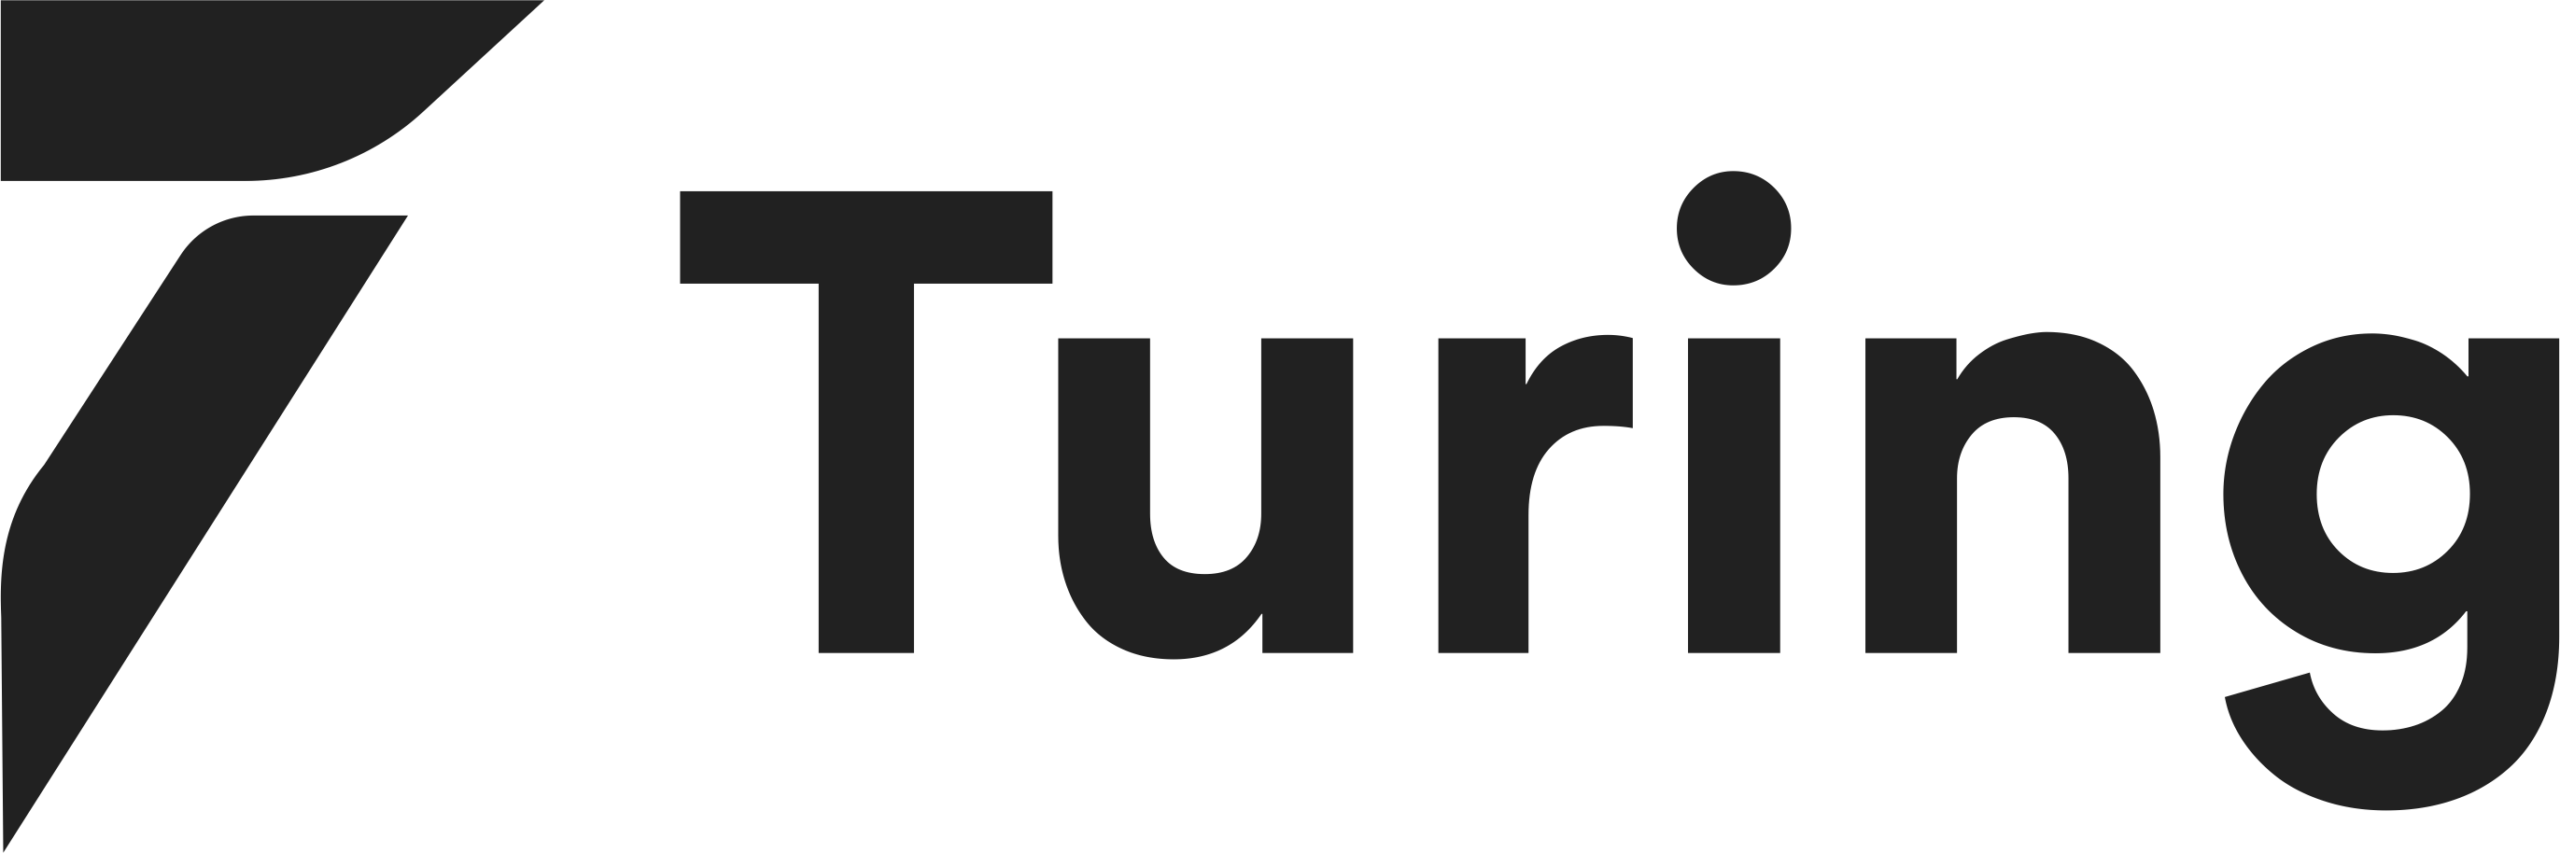 Contrata programadores con Turing